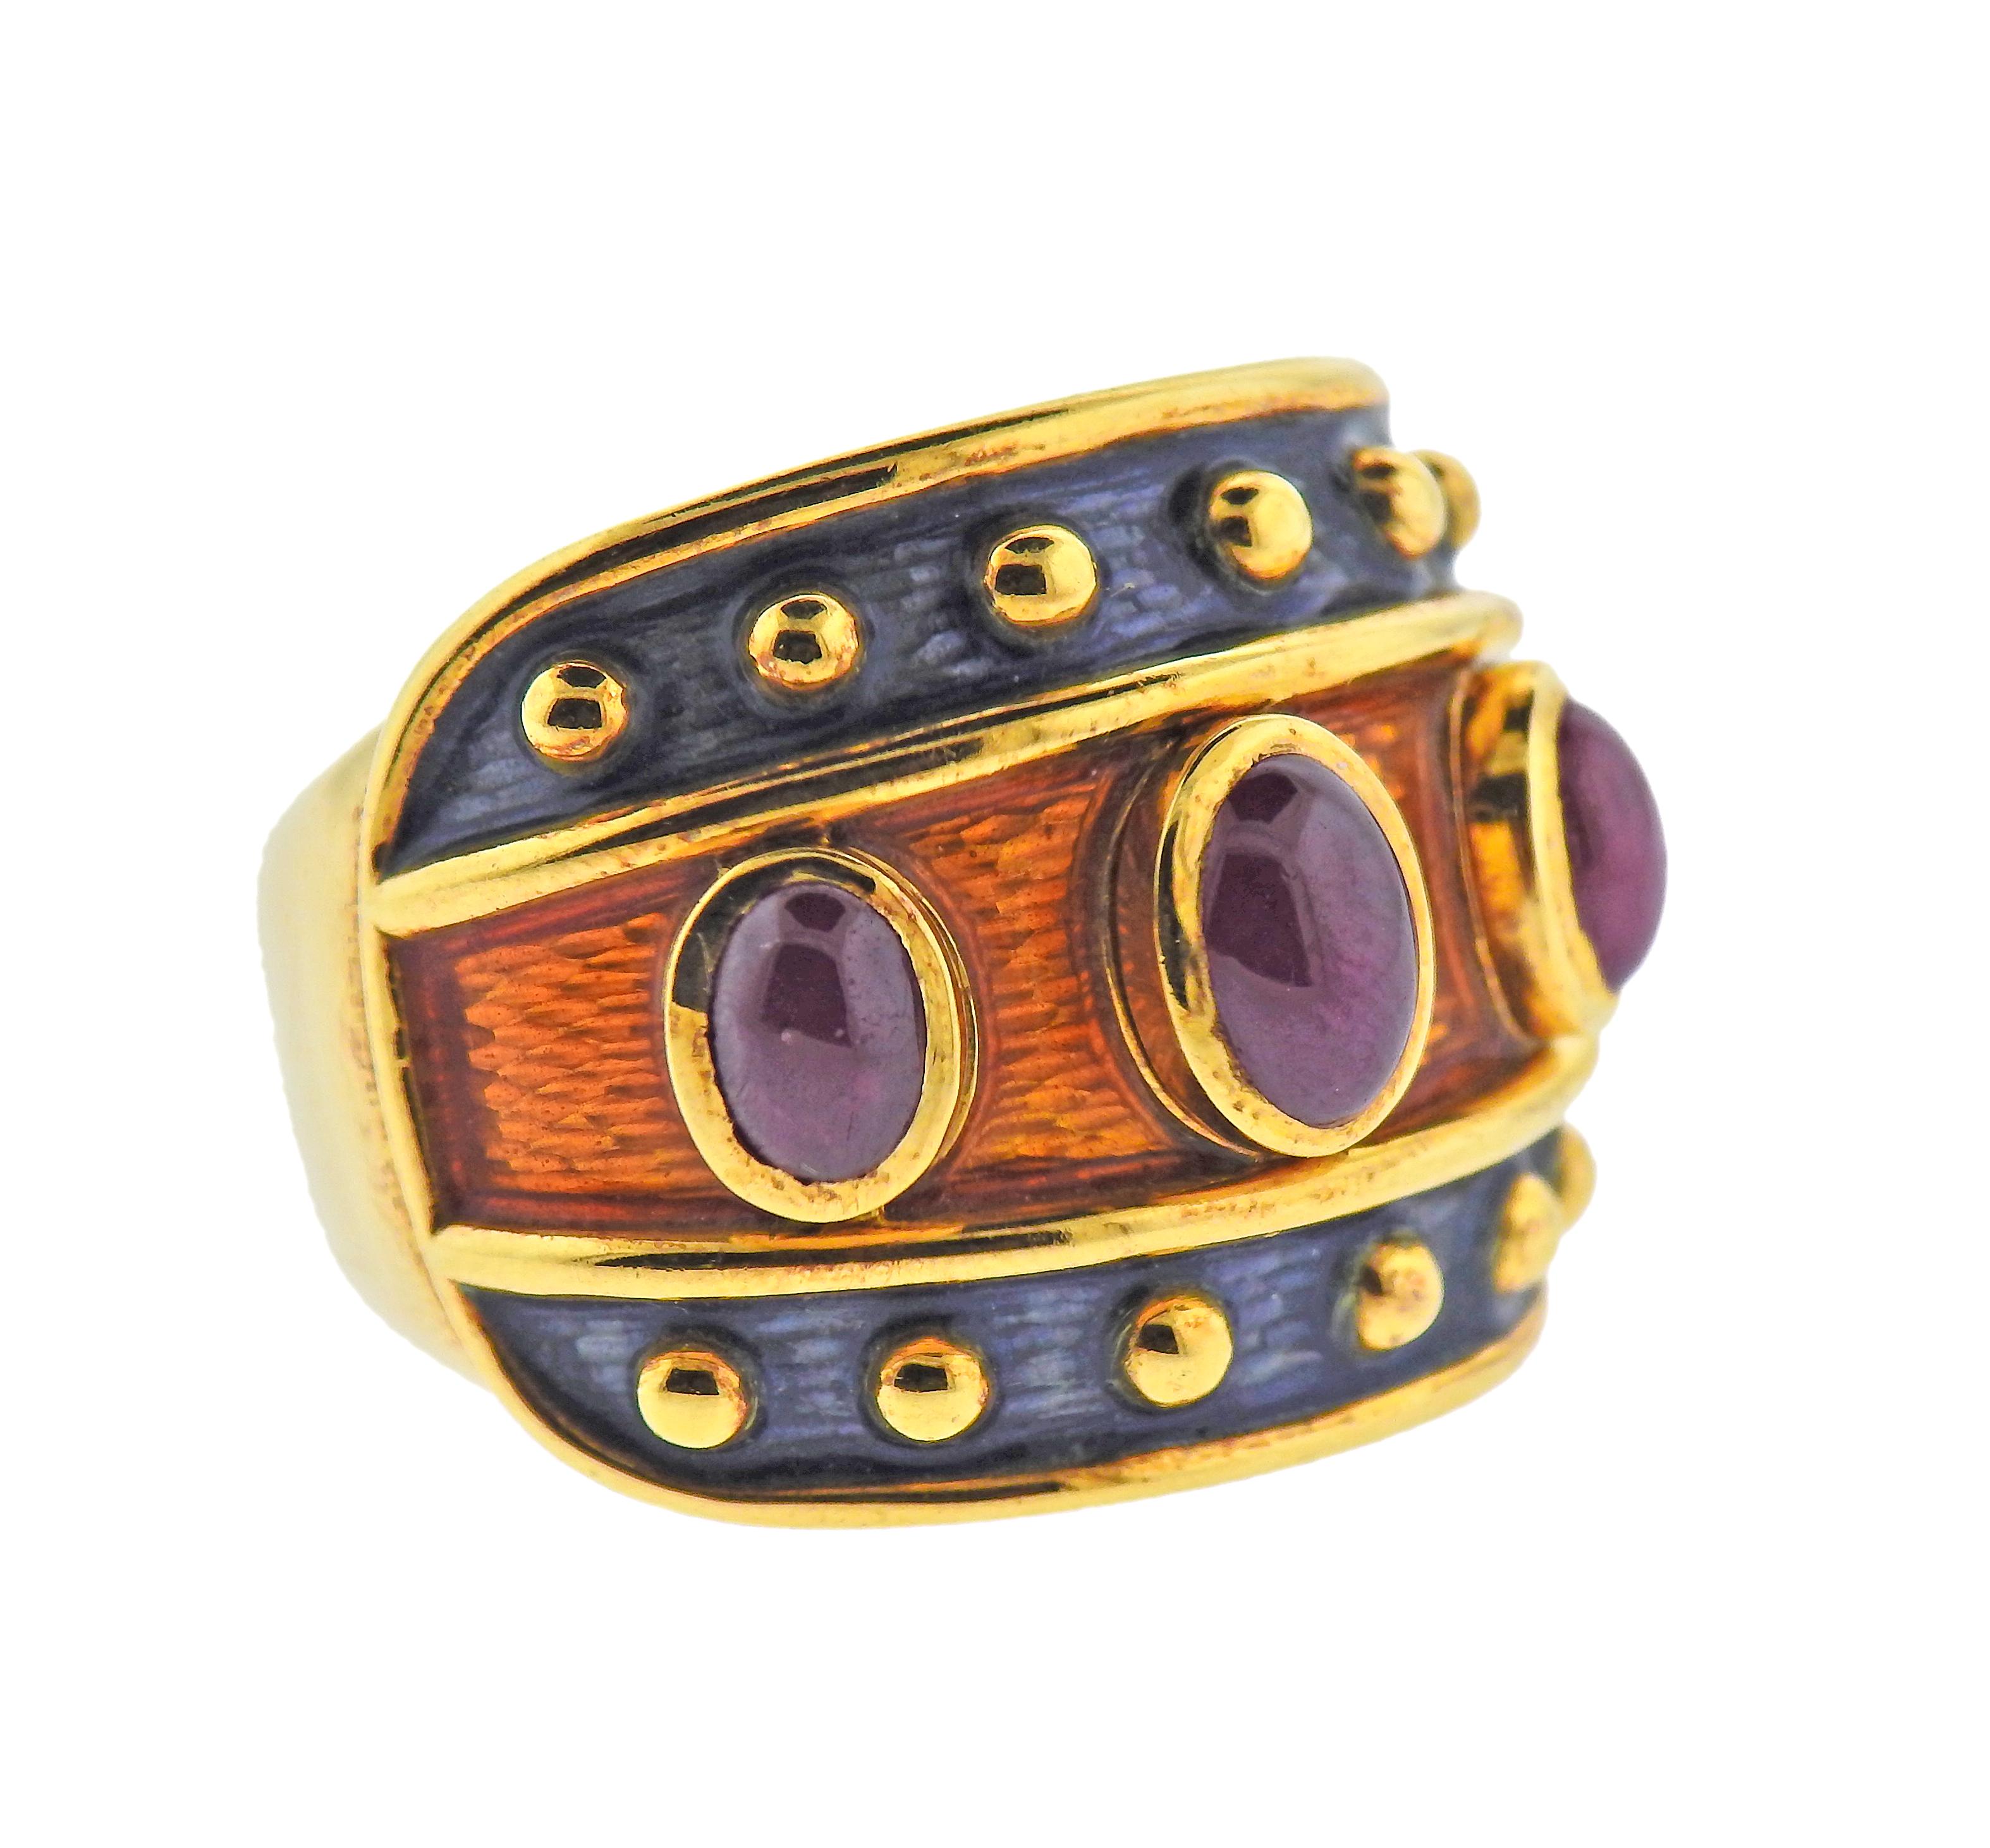 Ring aus 18 Karat Gold, verziert mit Emaille und 3 Rubincabochons. Ring Größe 7, Ring oben ist 20mm breit. Gekennzeichnet mit der Signatur des Herstellers (unleserlich). Gewicht 0 30,4 Gramm.